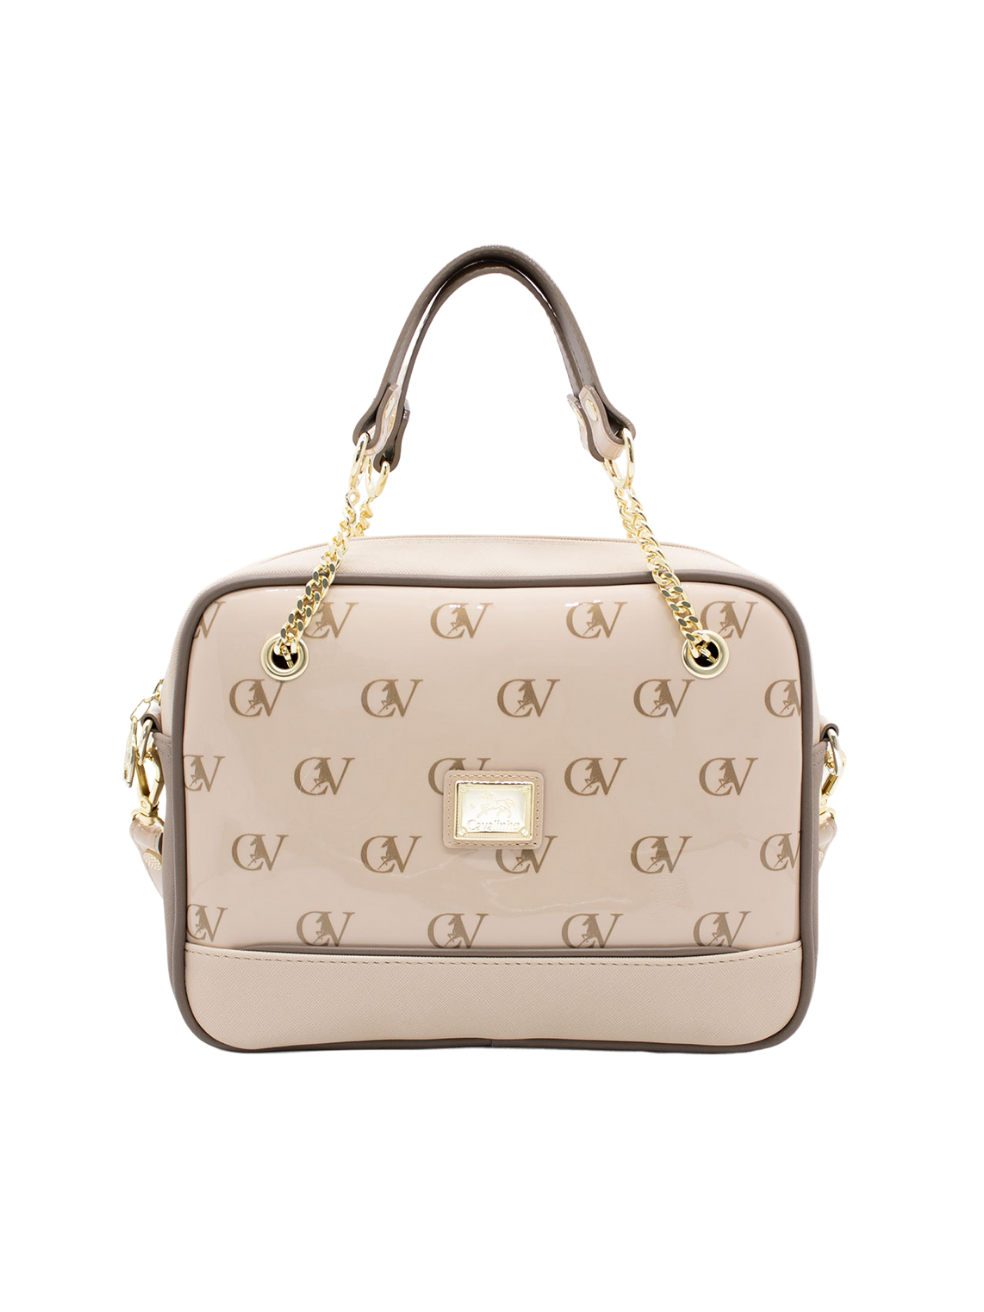 Cavalinho Signature Handbag SKU 18740512.31 #color_sand / beige